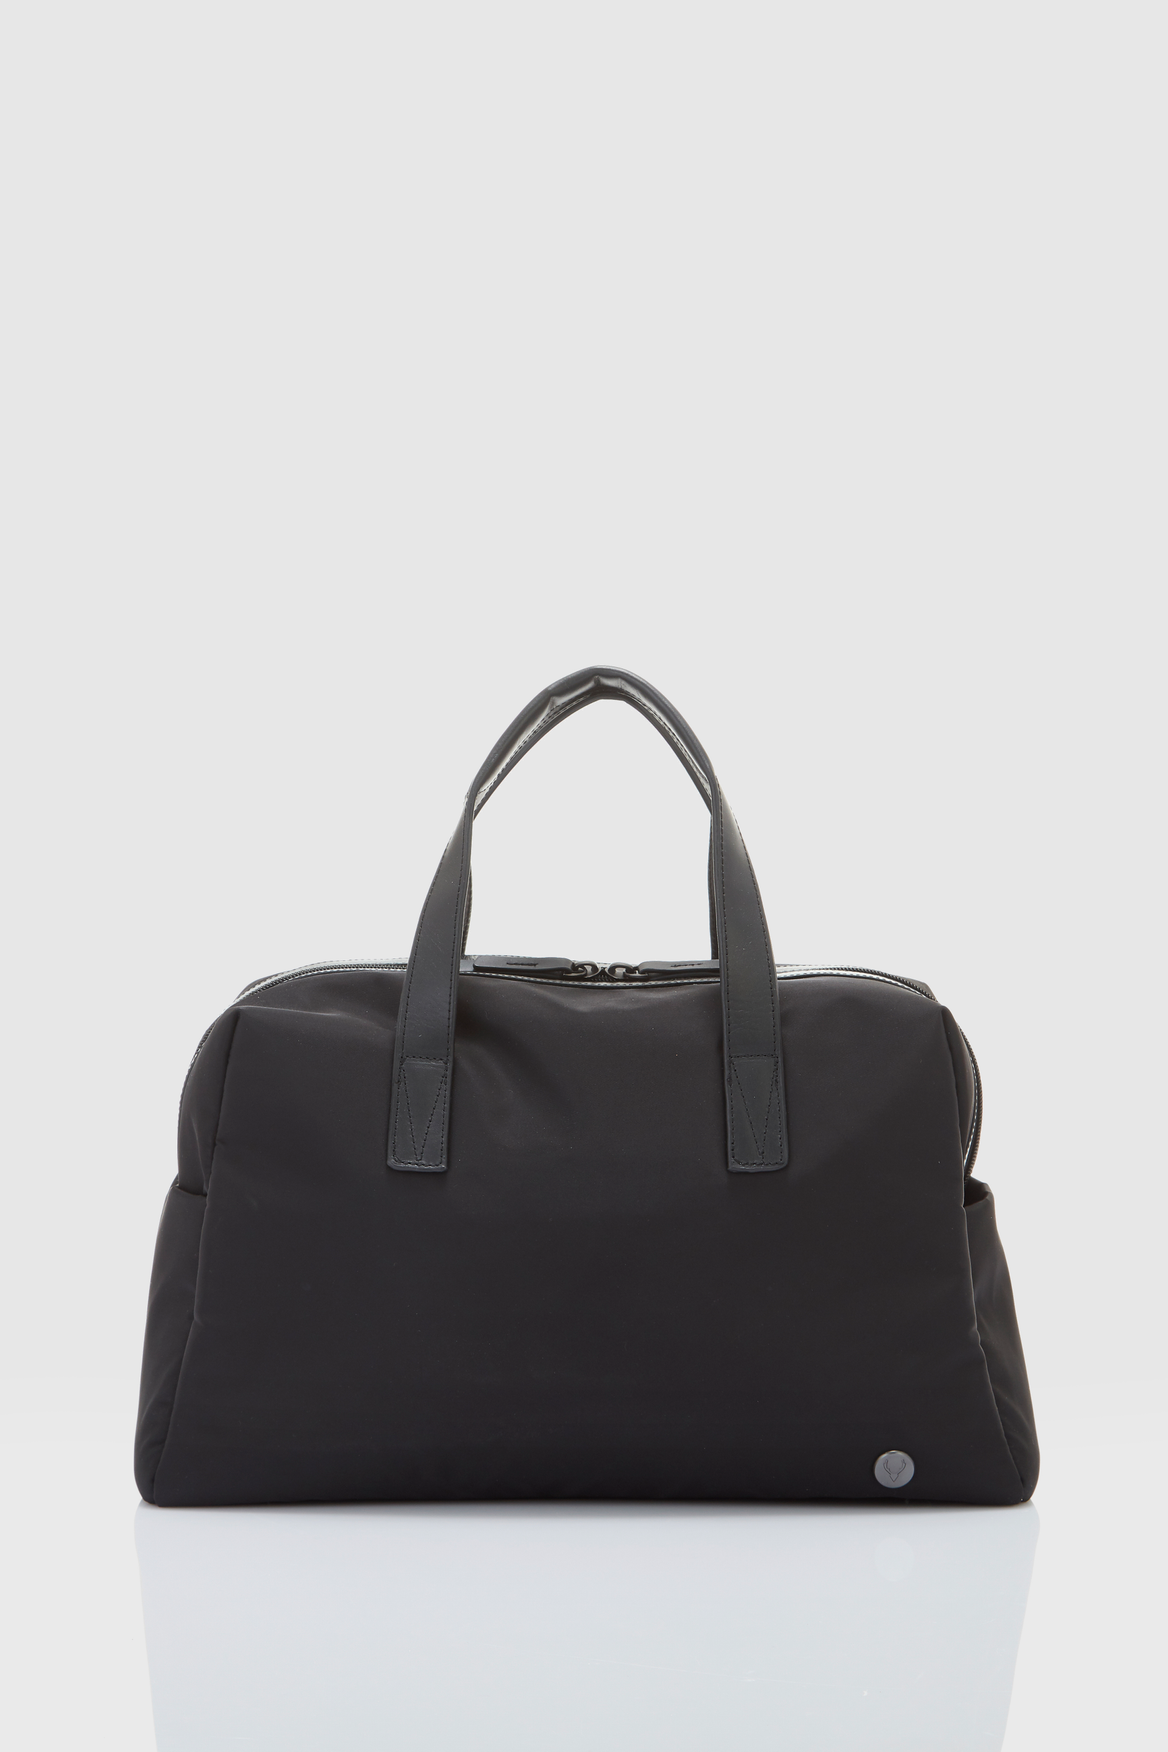 Antler Chelsea Overnight Bag – Strandbags Australia